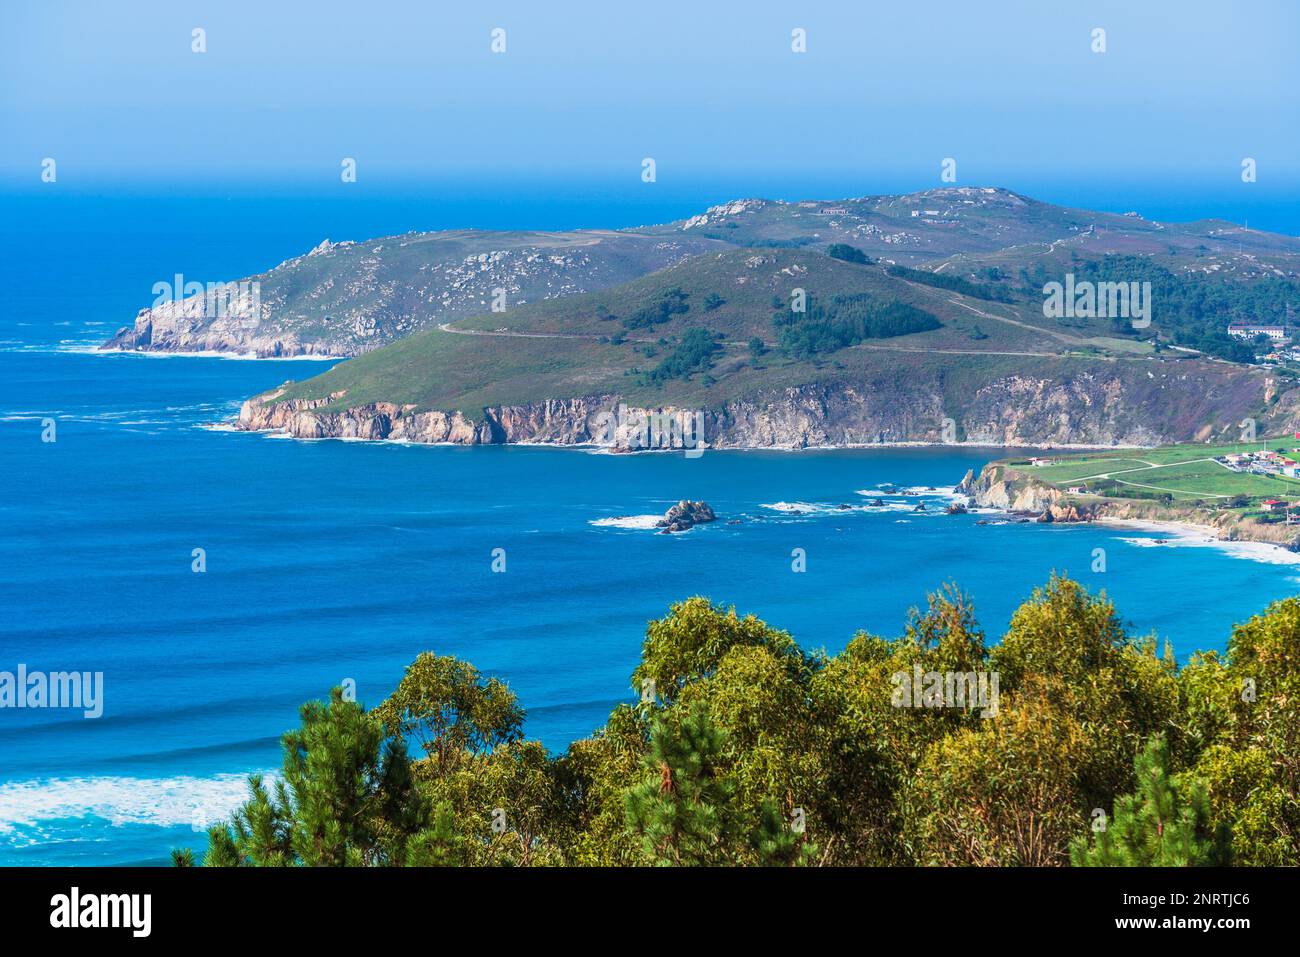 Vue panoramique sur la côte de l'océan Atlantique en Galice, Espagne. Cabo Prior, Une Conogne. Banque D'Images